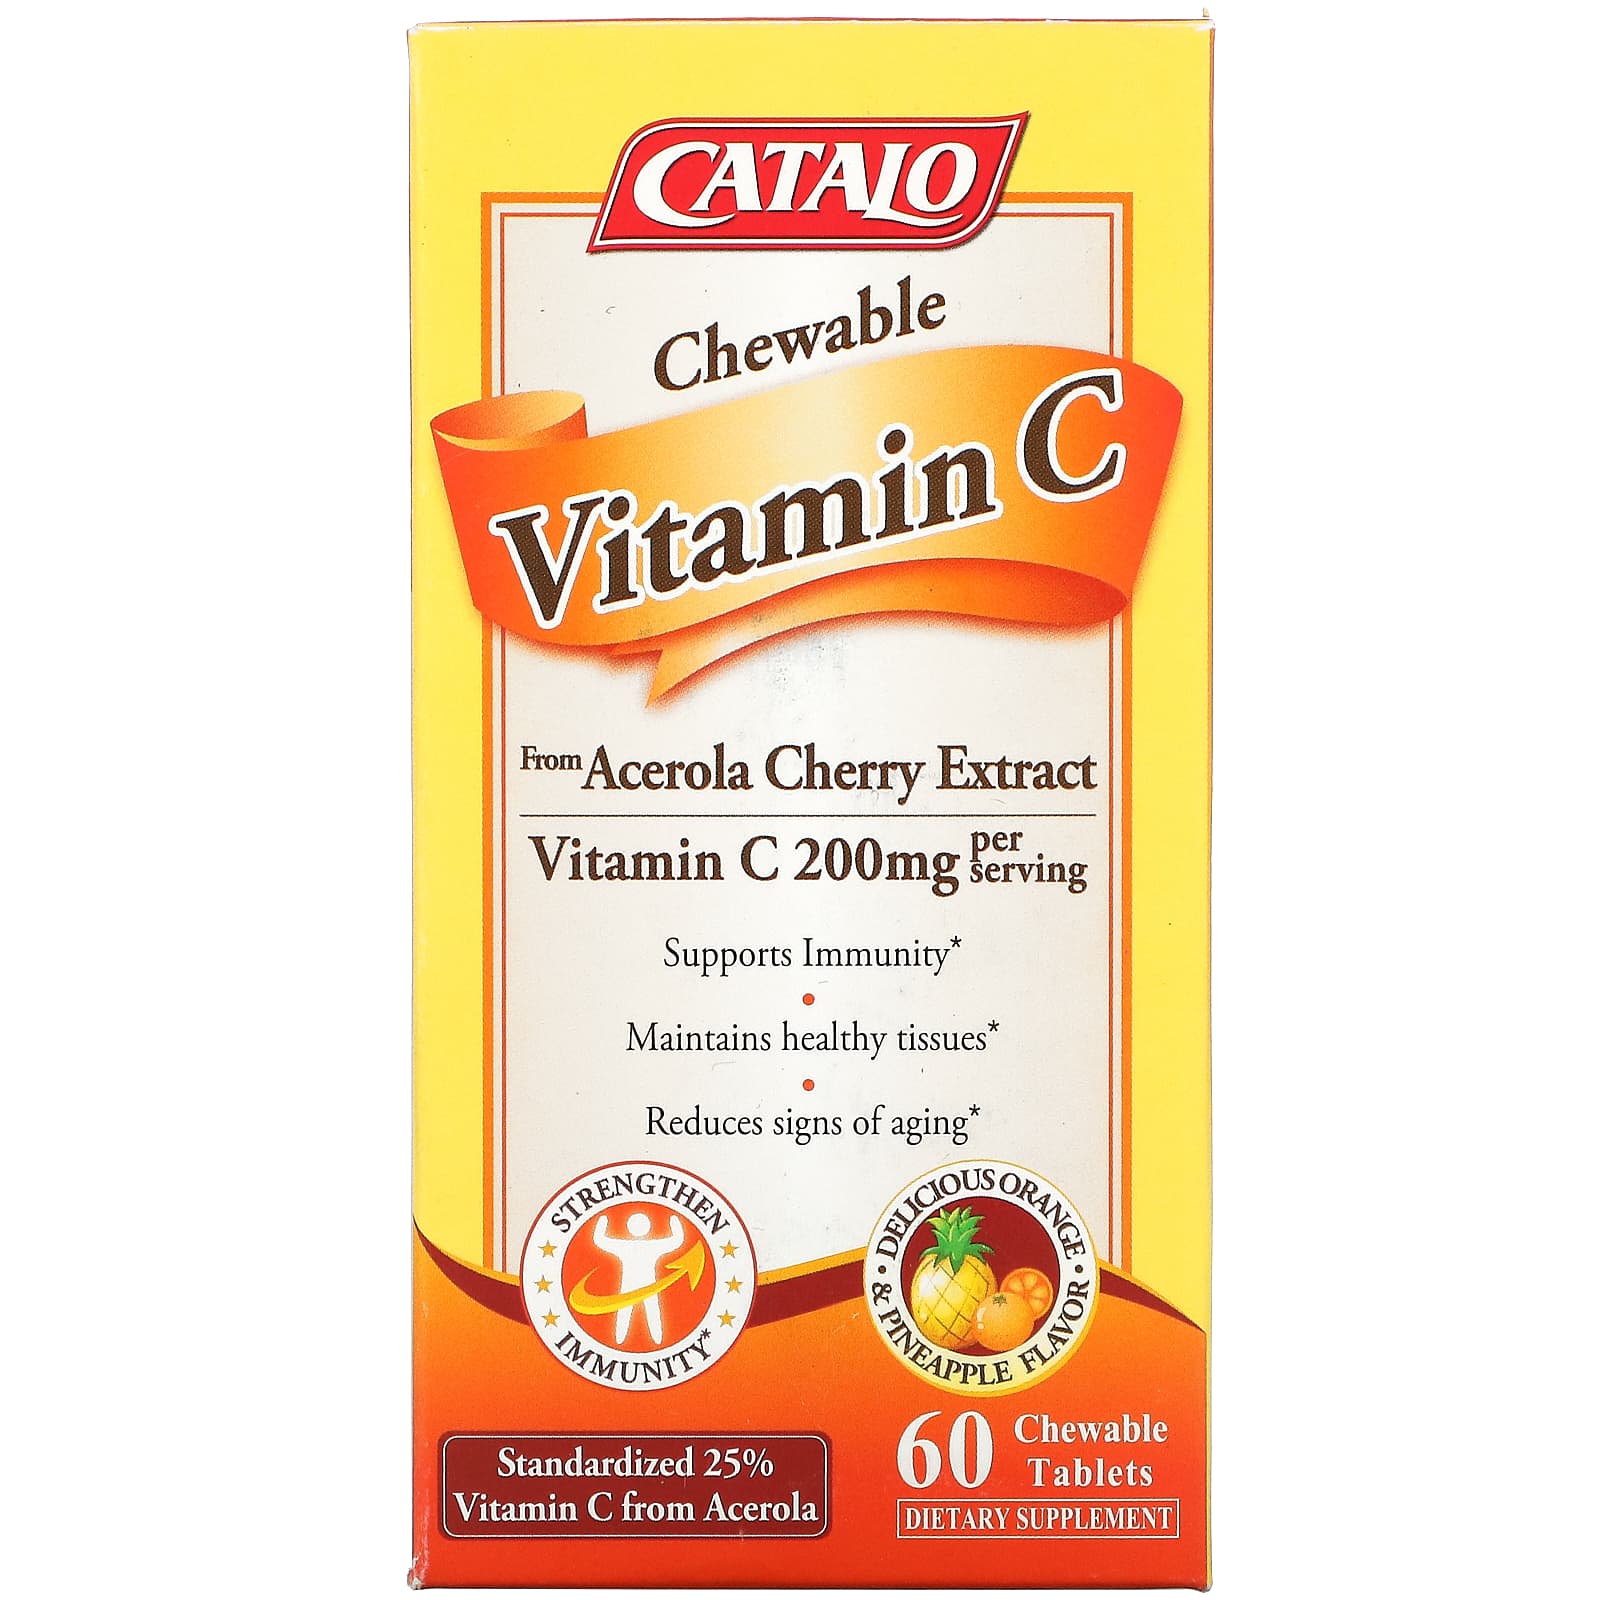 Жевательный Витамин C Catalo Naturals, апельсин и ананас, 60 жевательных таблеток жевательный витамин c catalo naturals апельсин и ананас 60 жевательных таблеток